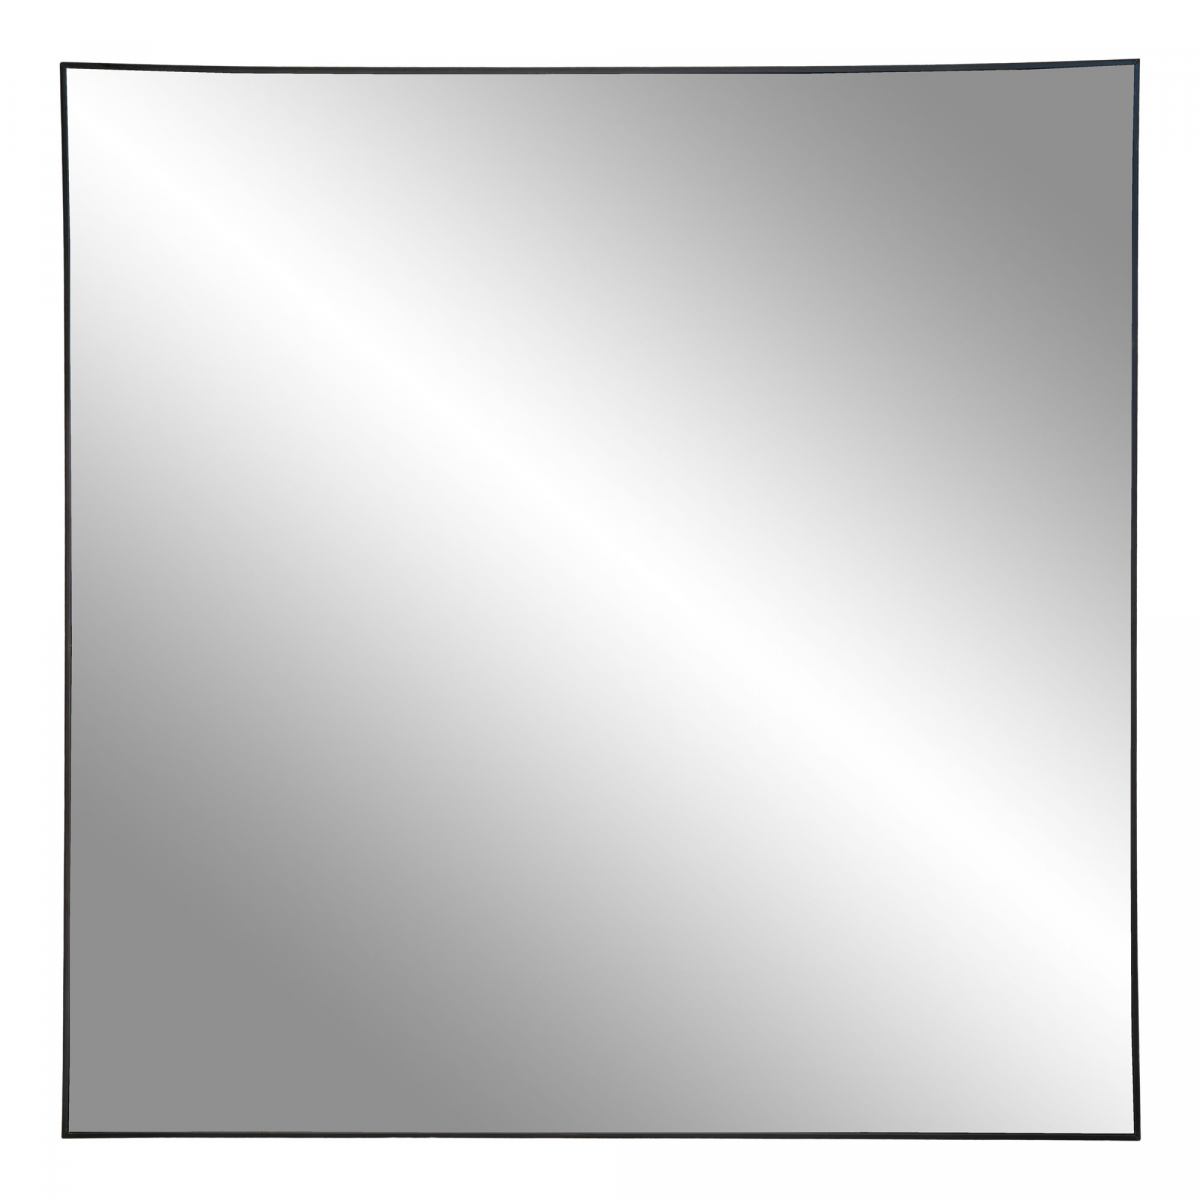 Americanflat Specchio Quadrato da Parete 60x60 cm con Cornice Nera -  Specchio da Parete Moderno per Bagno, Camera, Salotto - Specchio da Muro  Quadrato - Specchio con Cornice e Ganci Integrati 